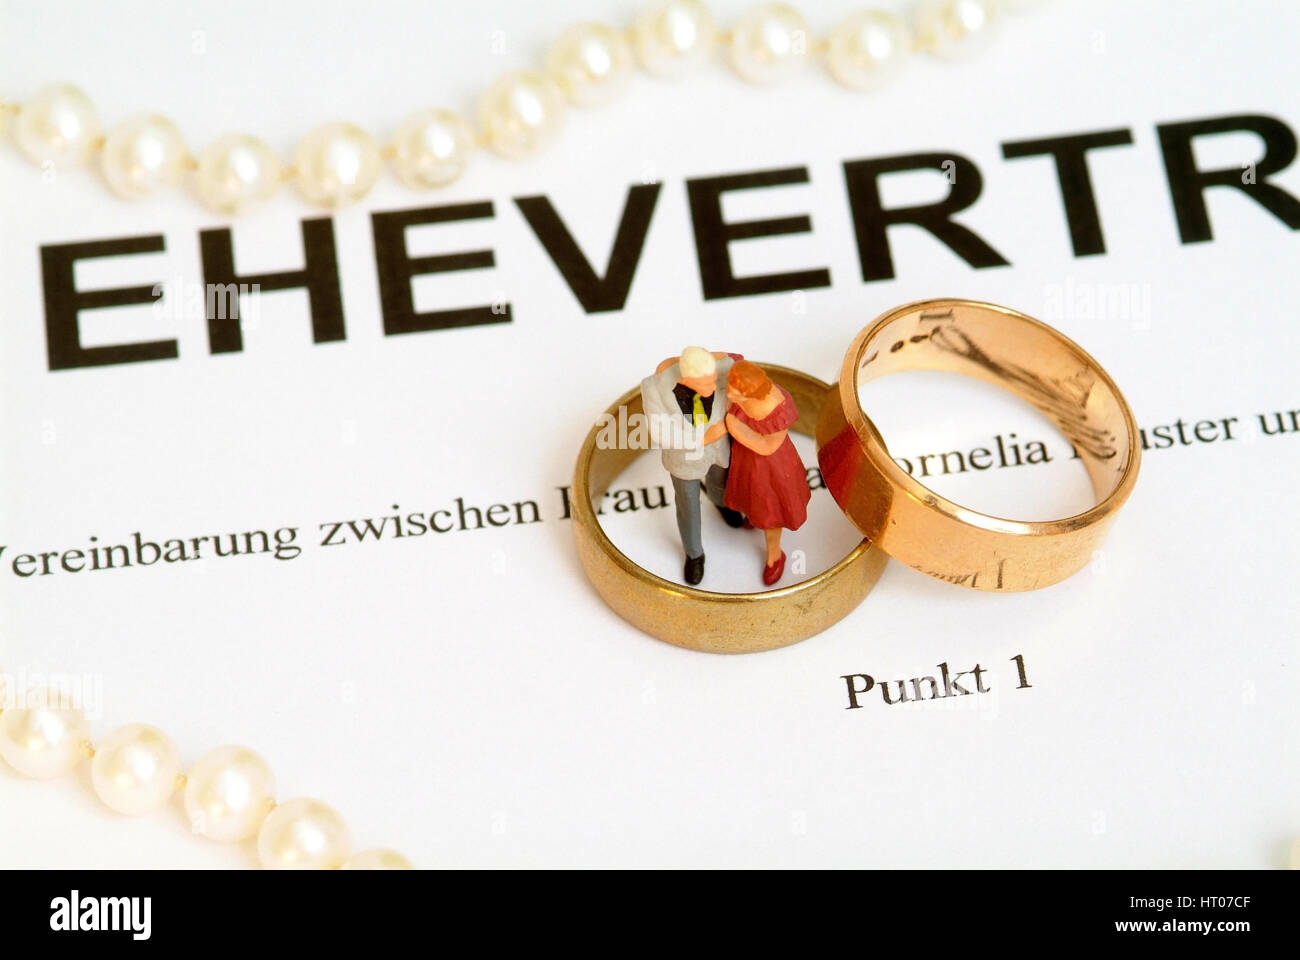 Symbolbild Ehevertrag - syymbolic for marriage contract Stock Photo